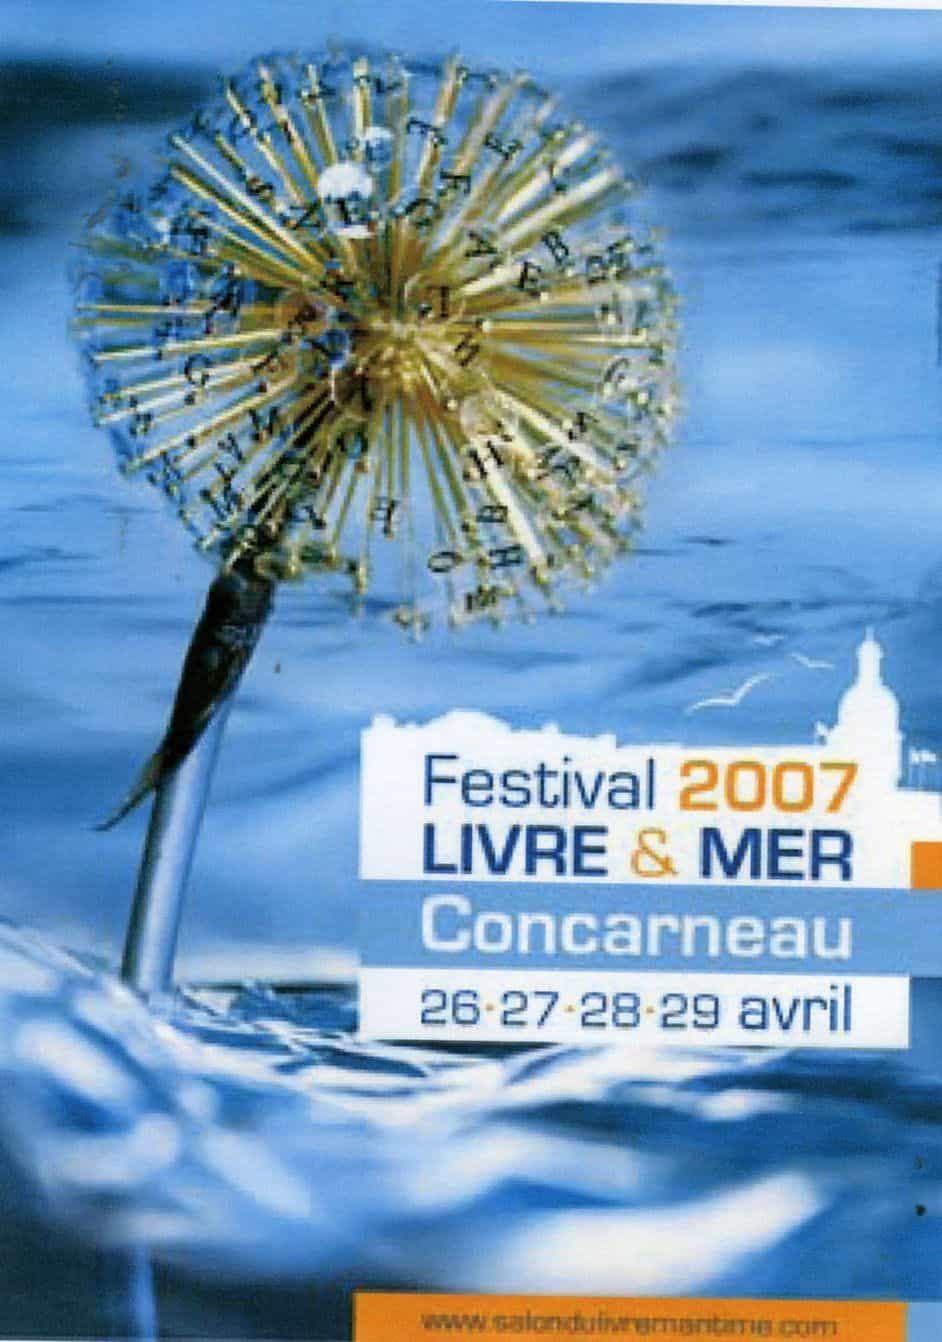 Le Festival Livre & Mer de Concarneau